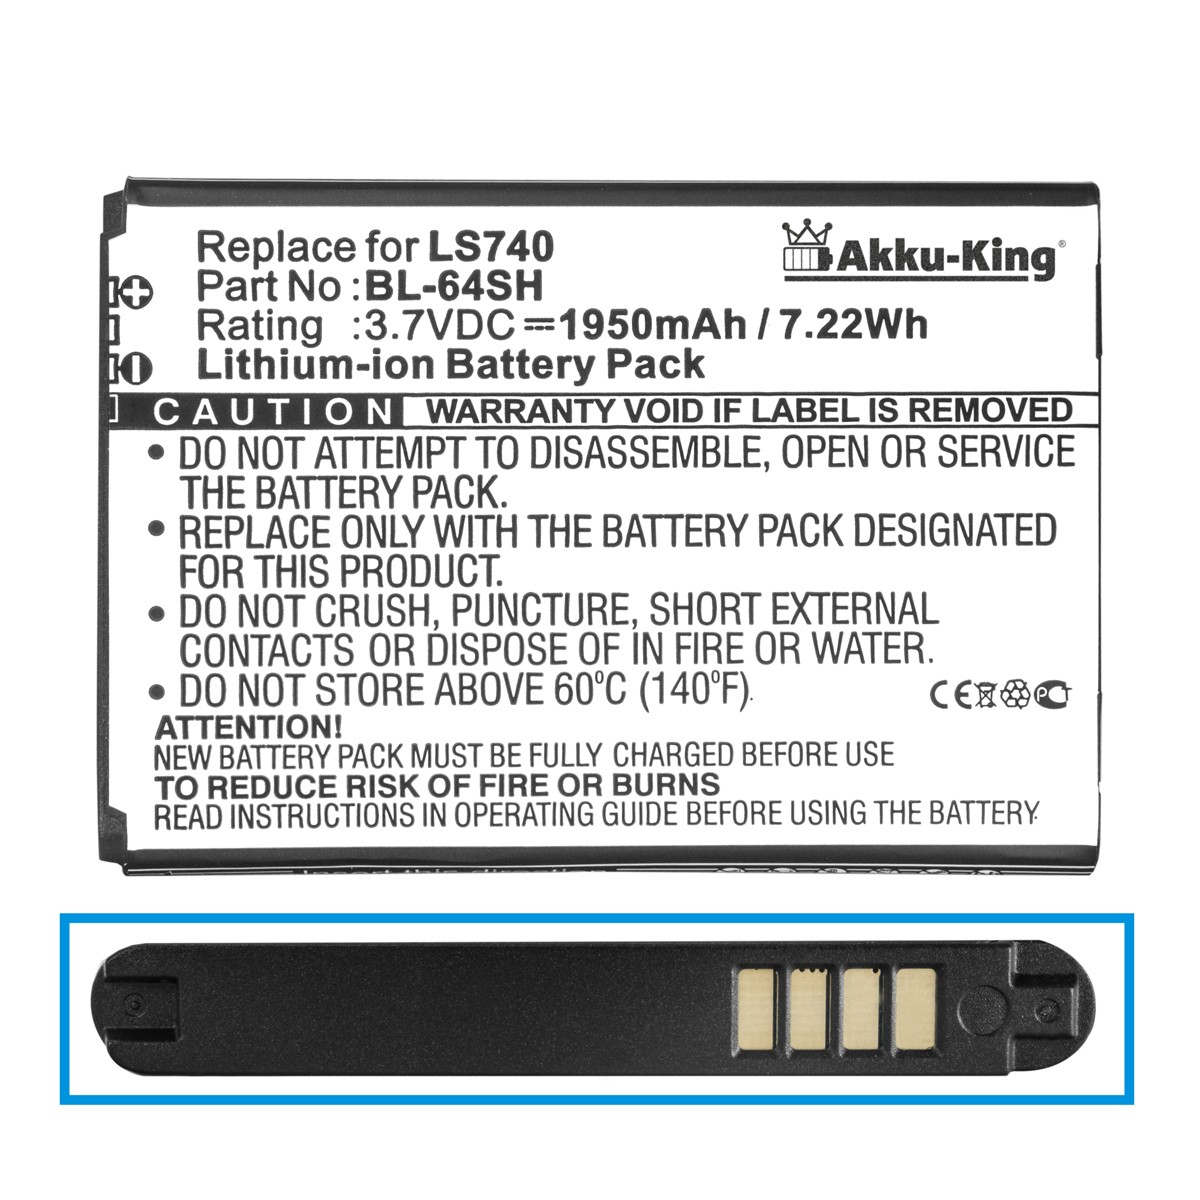 Handy-Akku, kompatibel LG AKKU-KING mit Li-Ion 3.7 1950mAh BL-64SH Akku Volt,